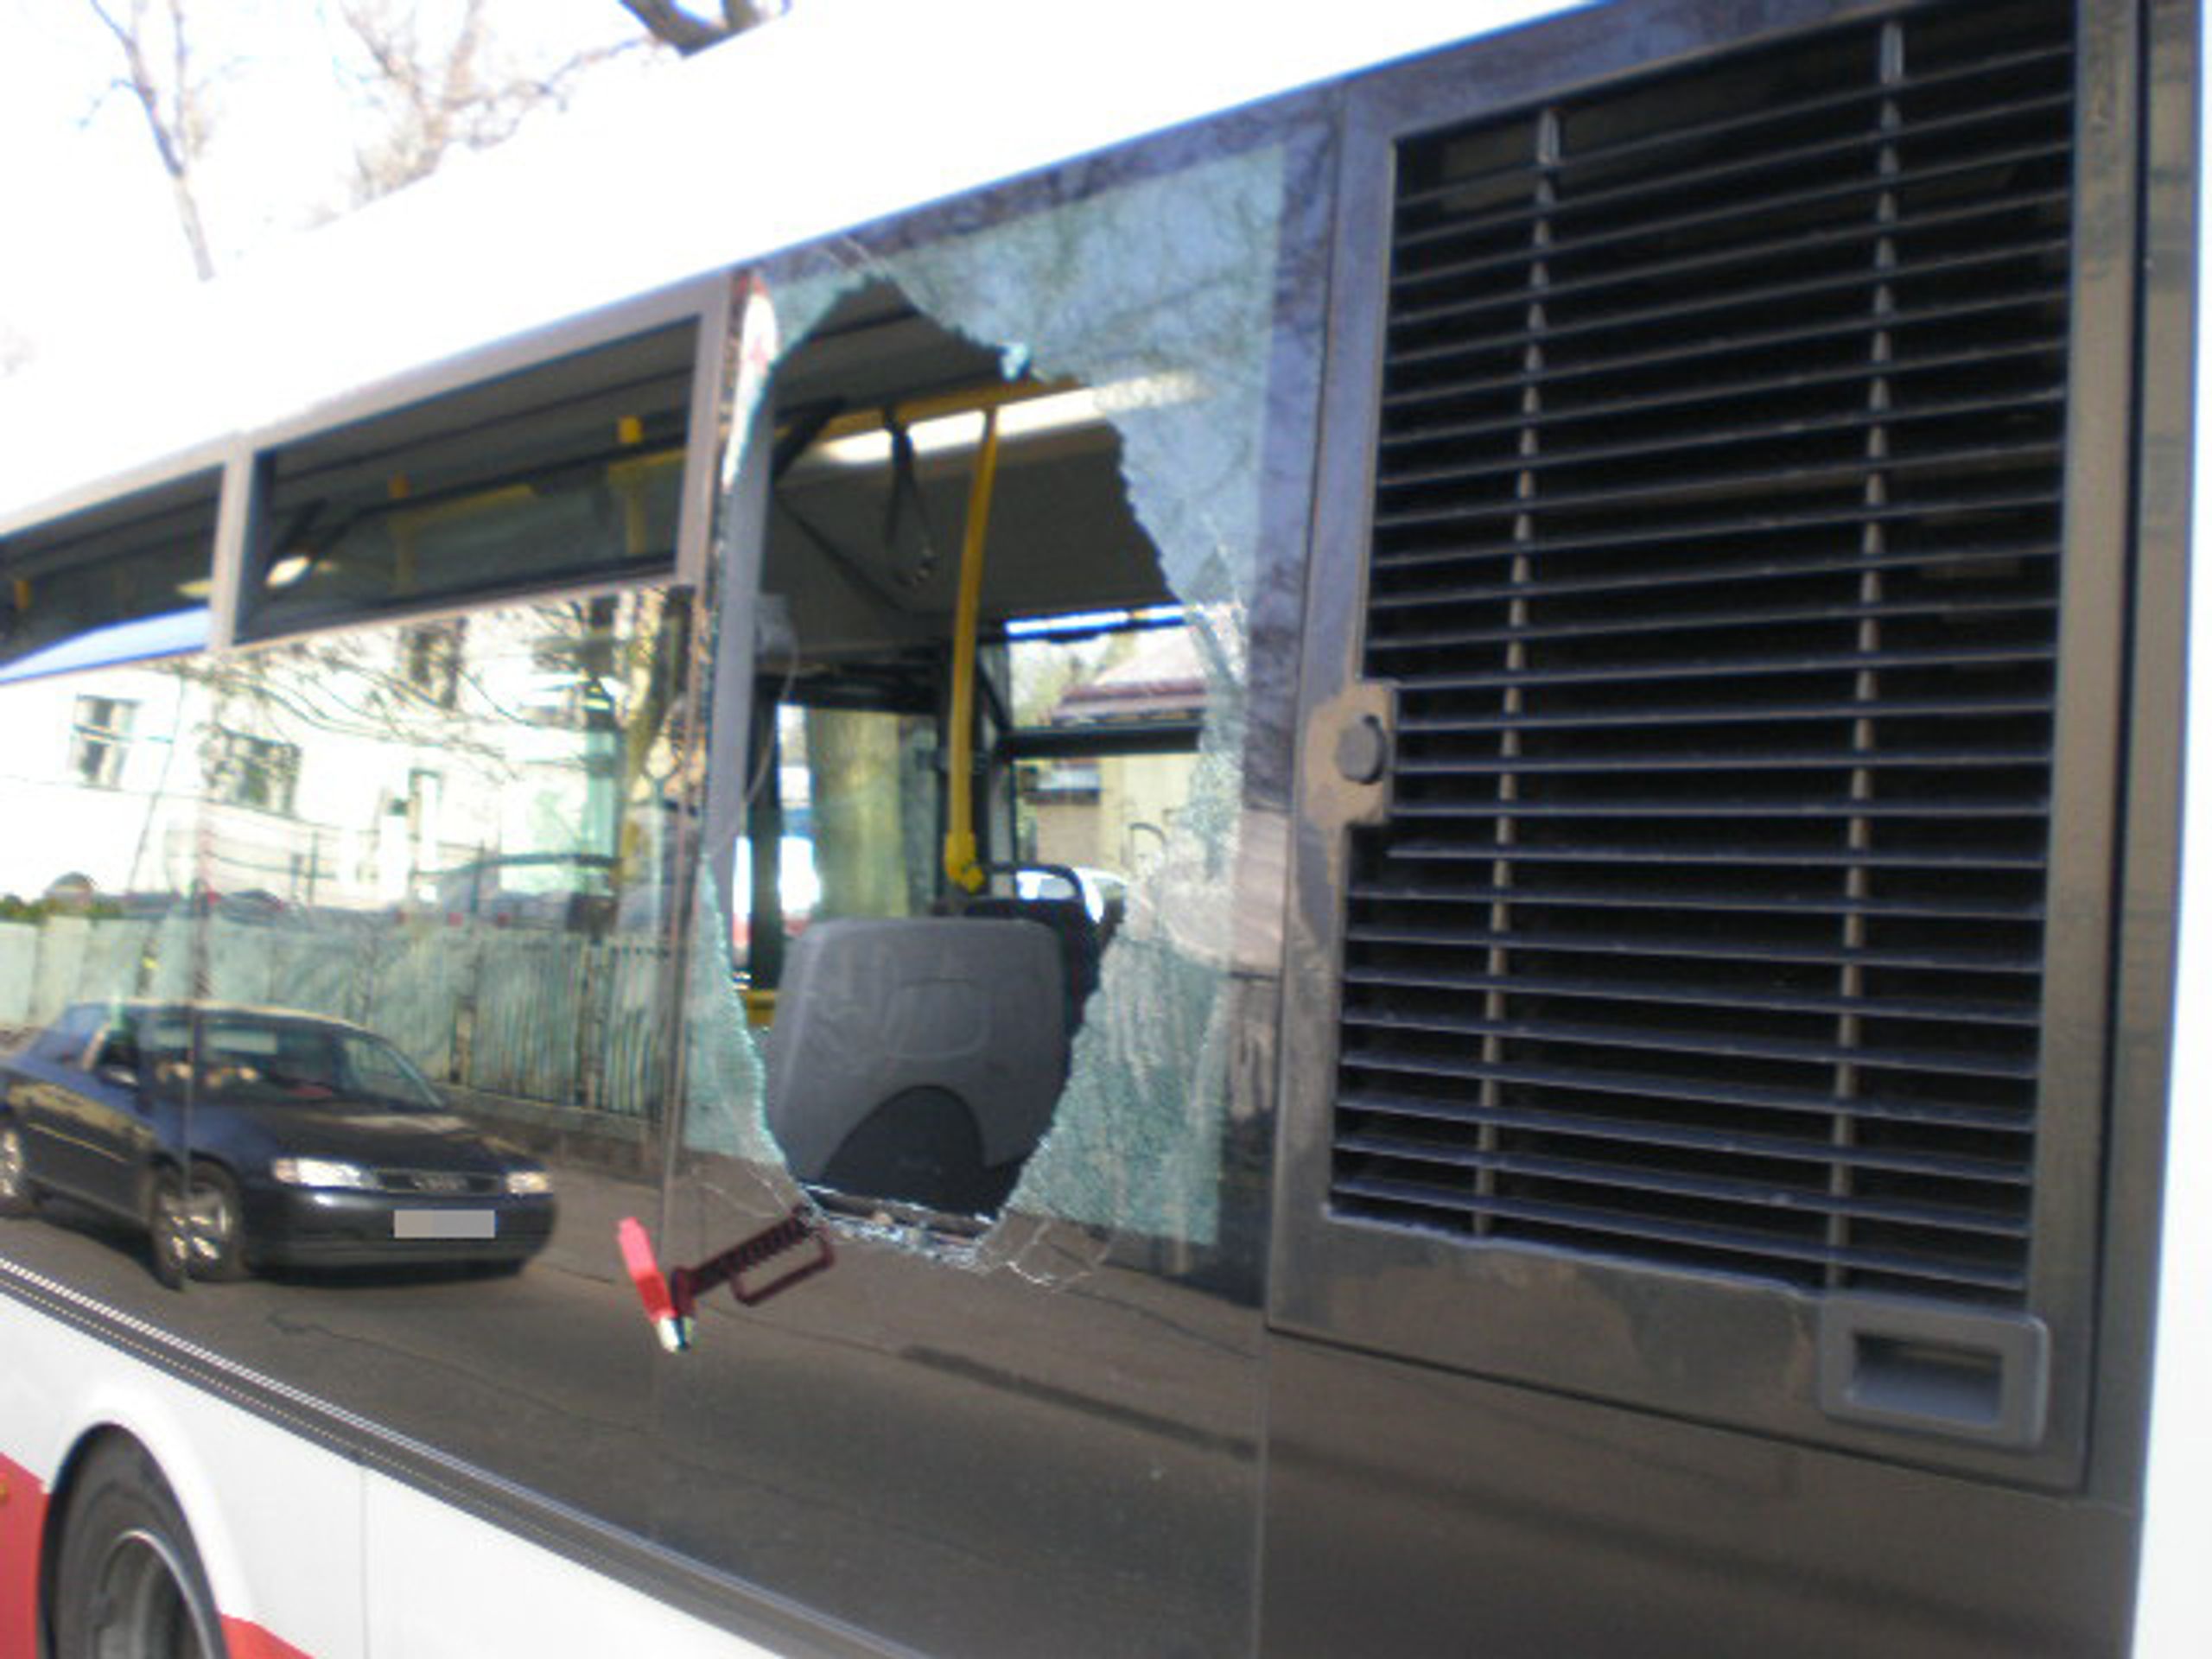 Muž vykopl v koloně okno autobusu a vyskočil - 1 - GALERIE: Muž vykopl v koloně okno autobusu a vyskočil (5/5)